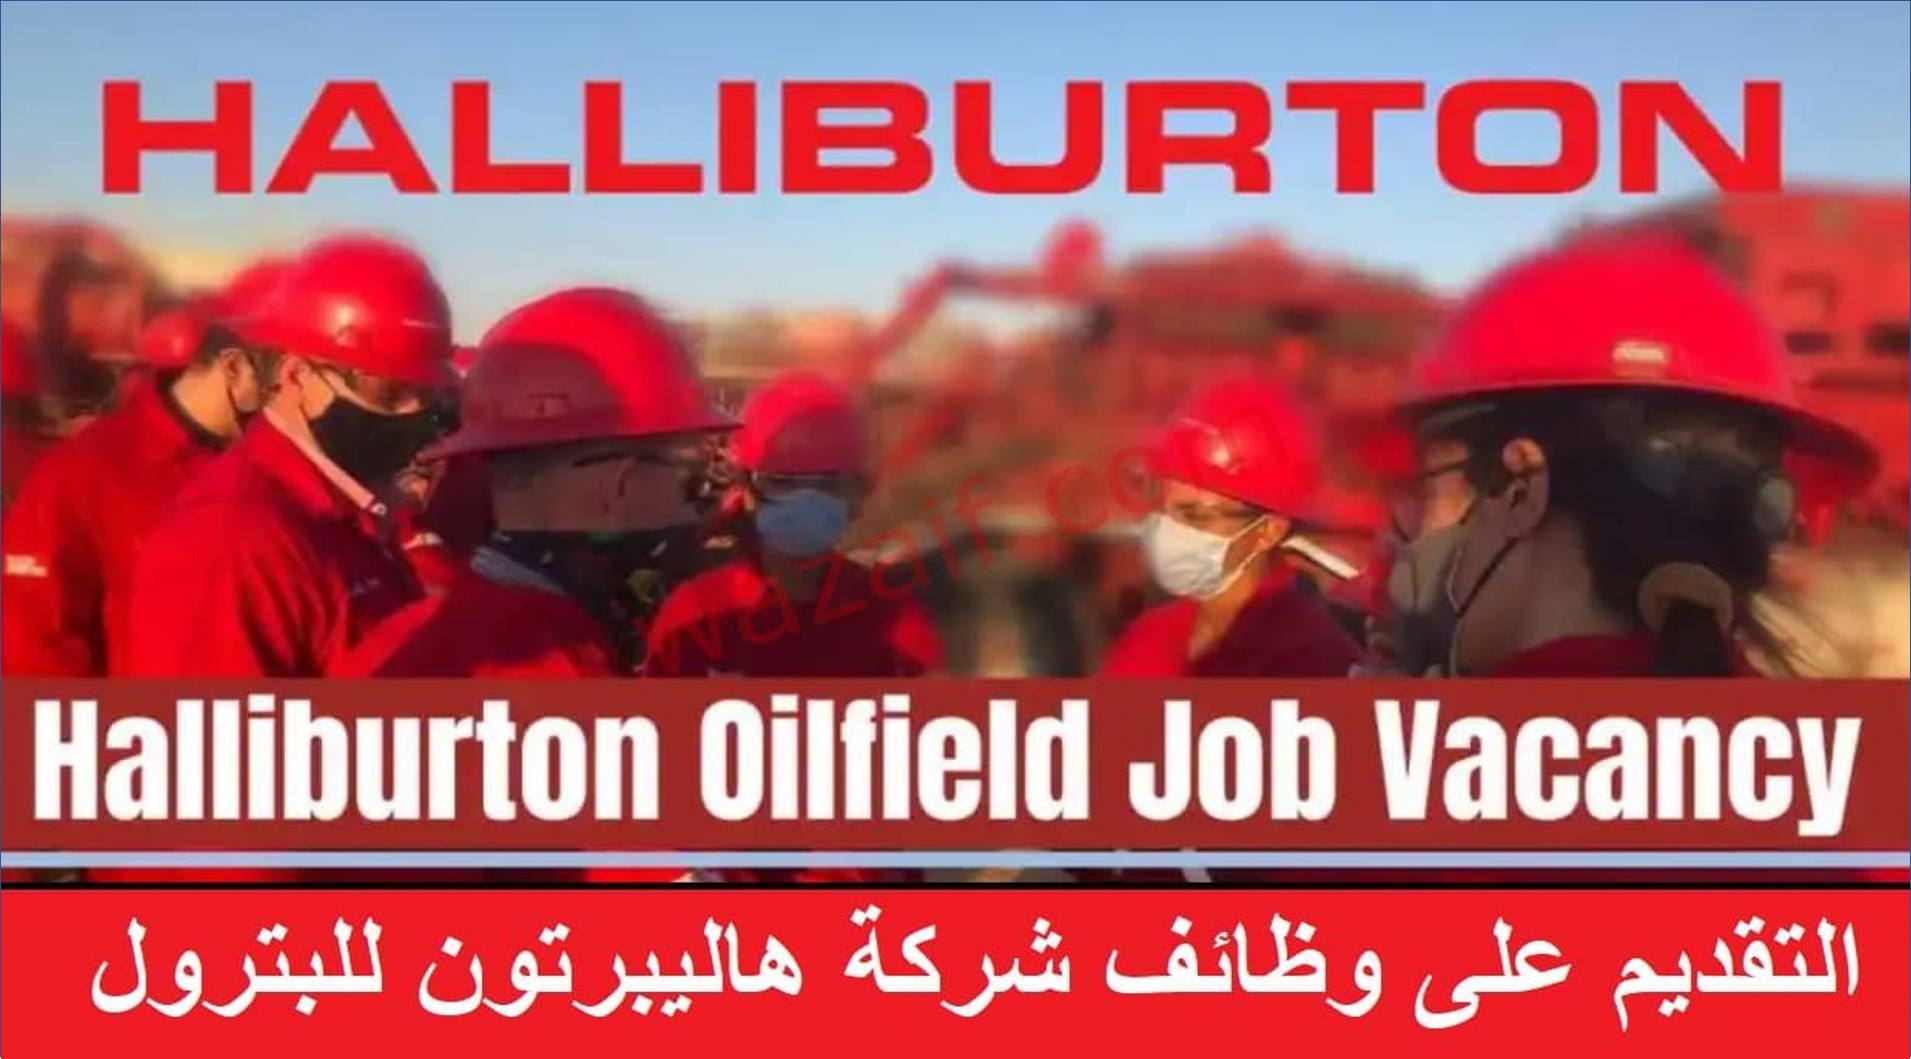 شركة هاليبرتون للبترول في الكويت تعلن عن فرص عمل